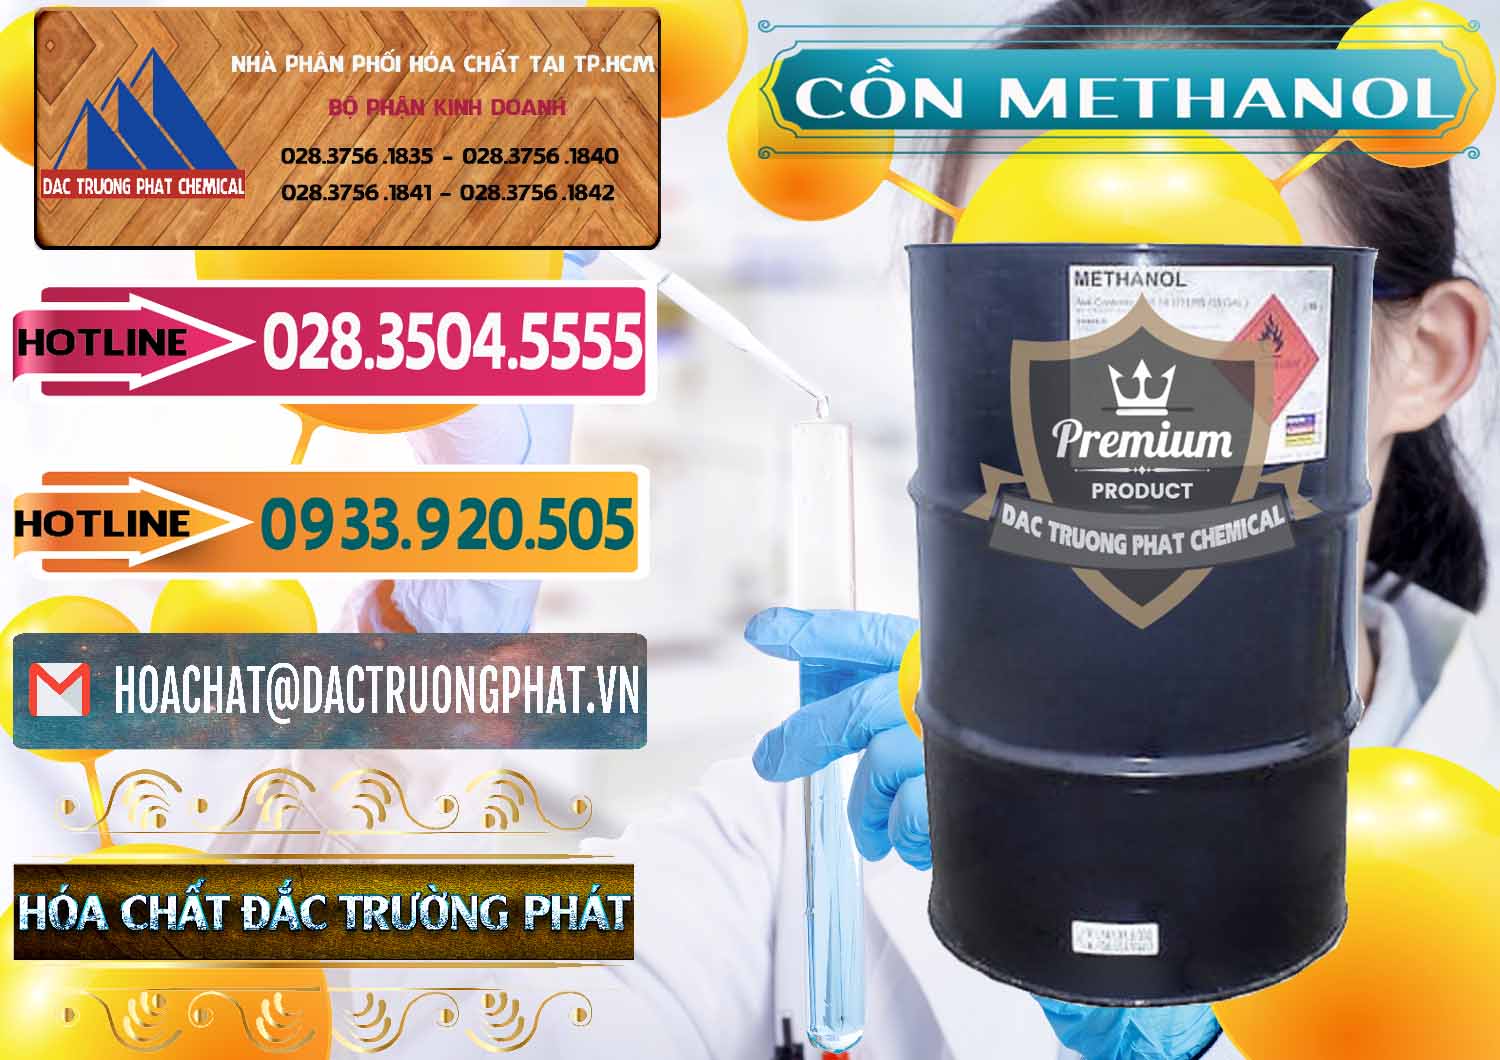 Cty chuyên cung ứng & bán Cồn Methanol - Methyl Alcohol Mã Lai Malaysia - 0331 - Đơn vị kinh doanh ( phân phối ) hóa chất tại TP.HCM - dactruongphat.vn